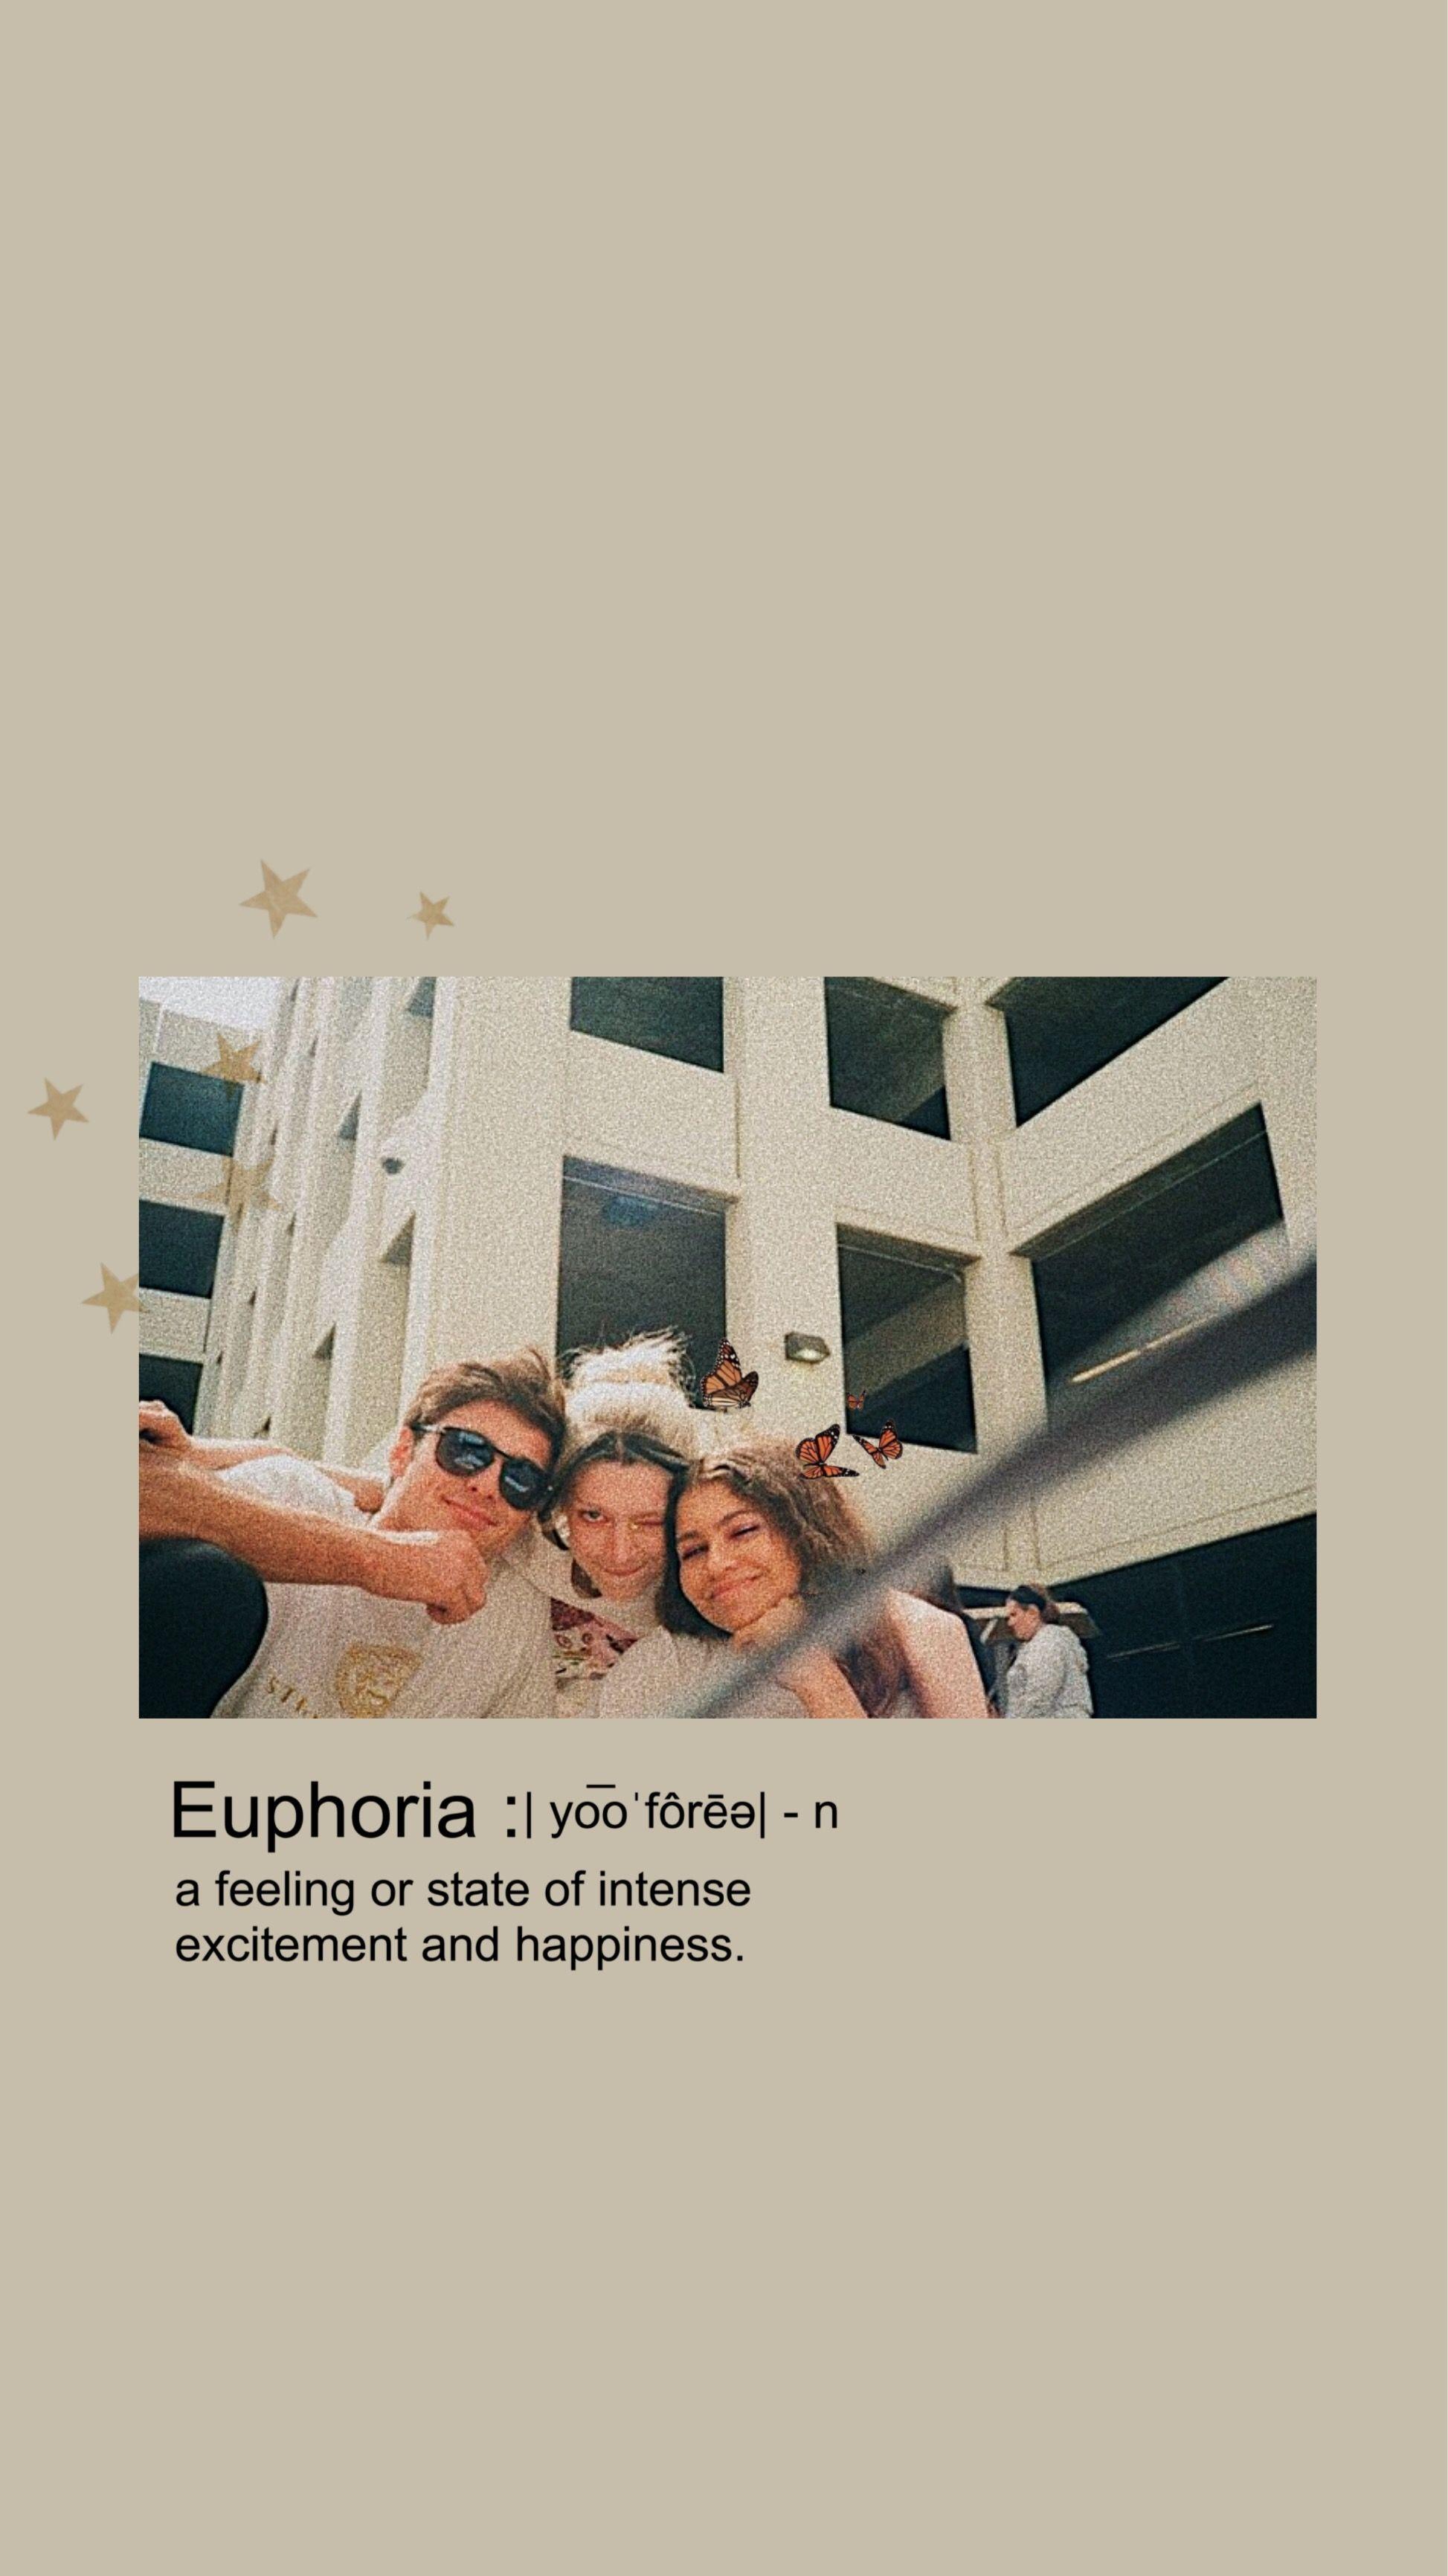 Buy Euphoria Aesthetic Desktop Wallpaper Digital Download Online in India   Etsy